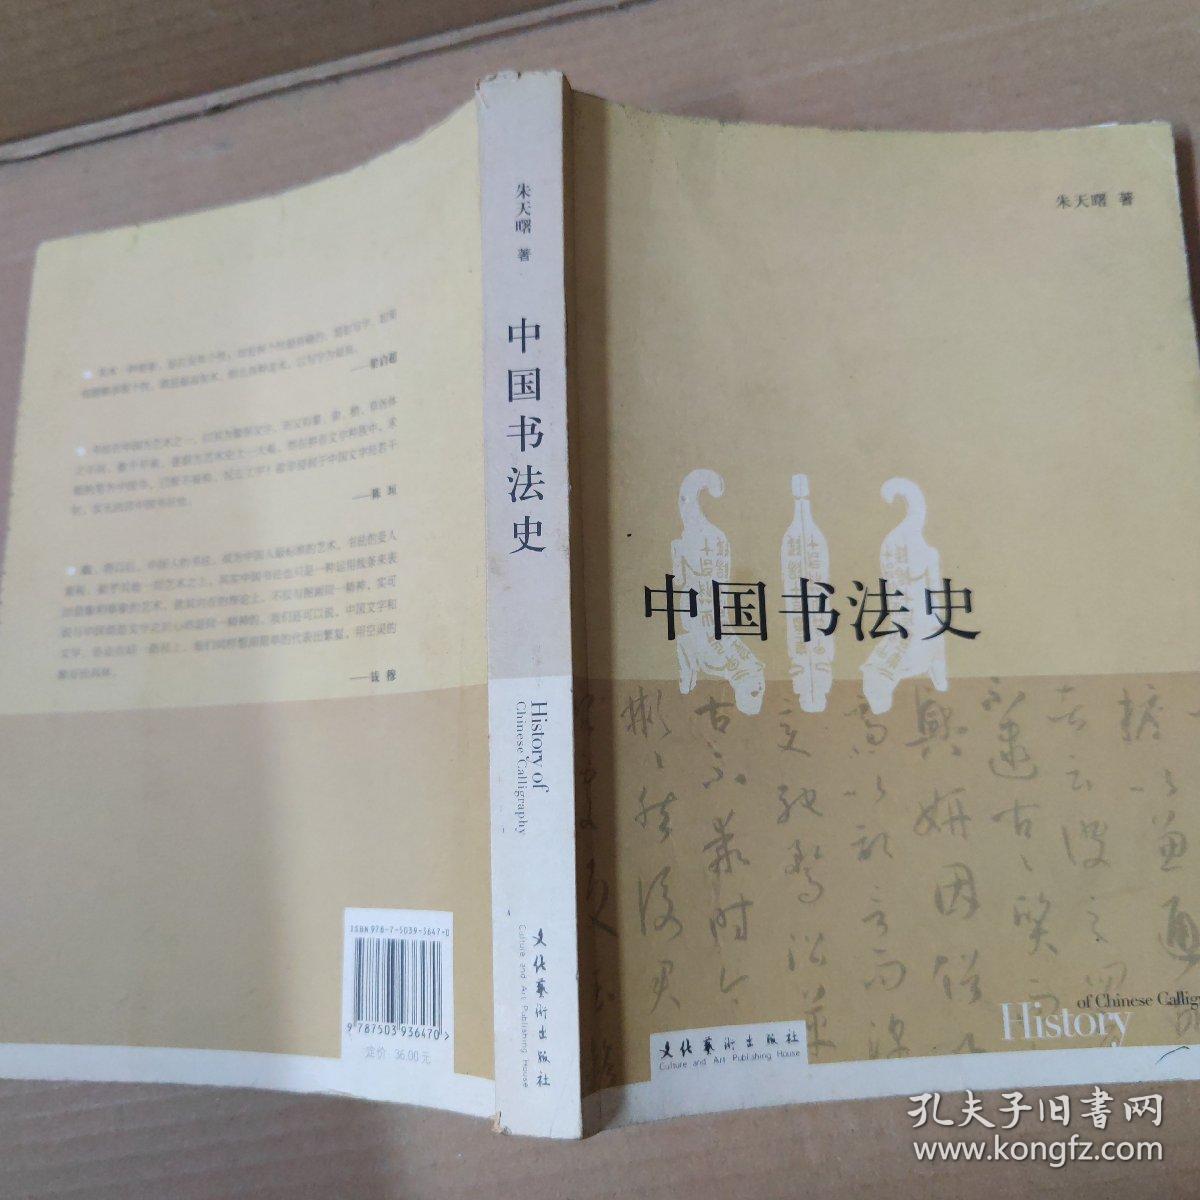 中国书法史  16开  一版一印